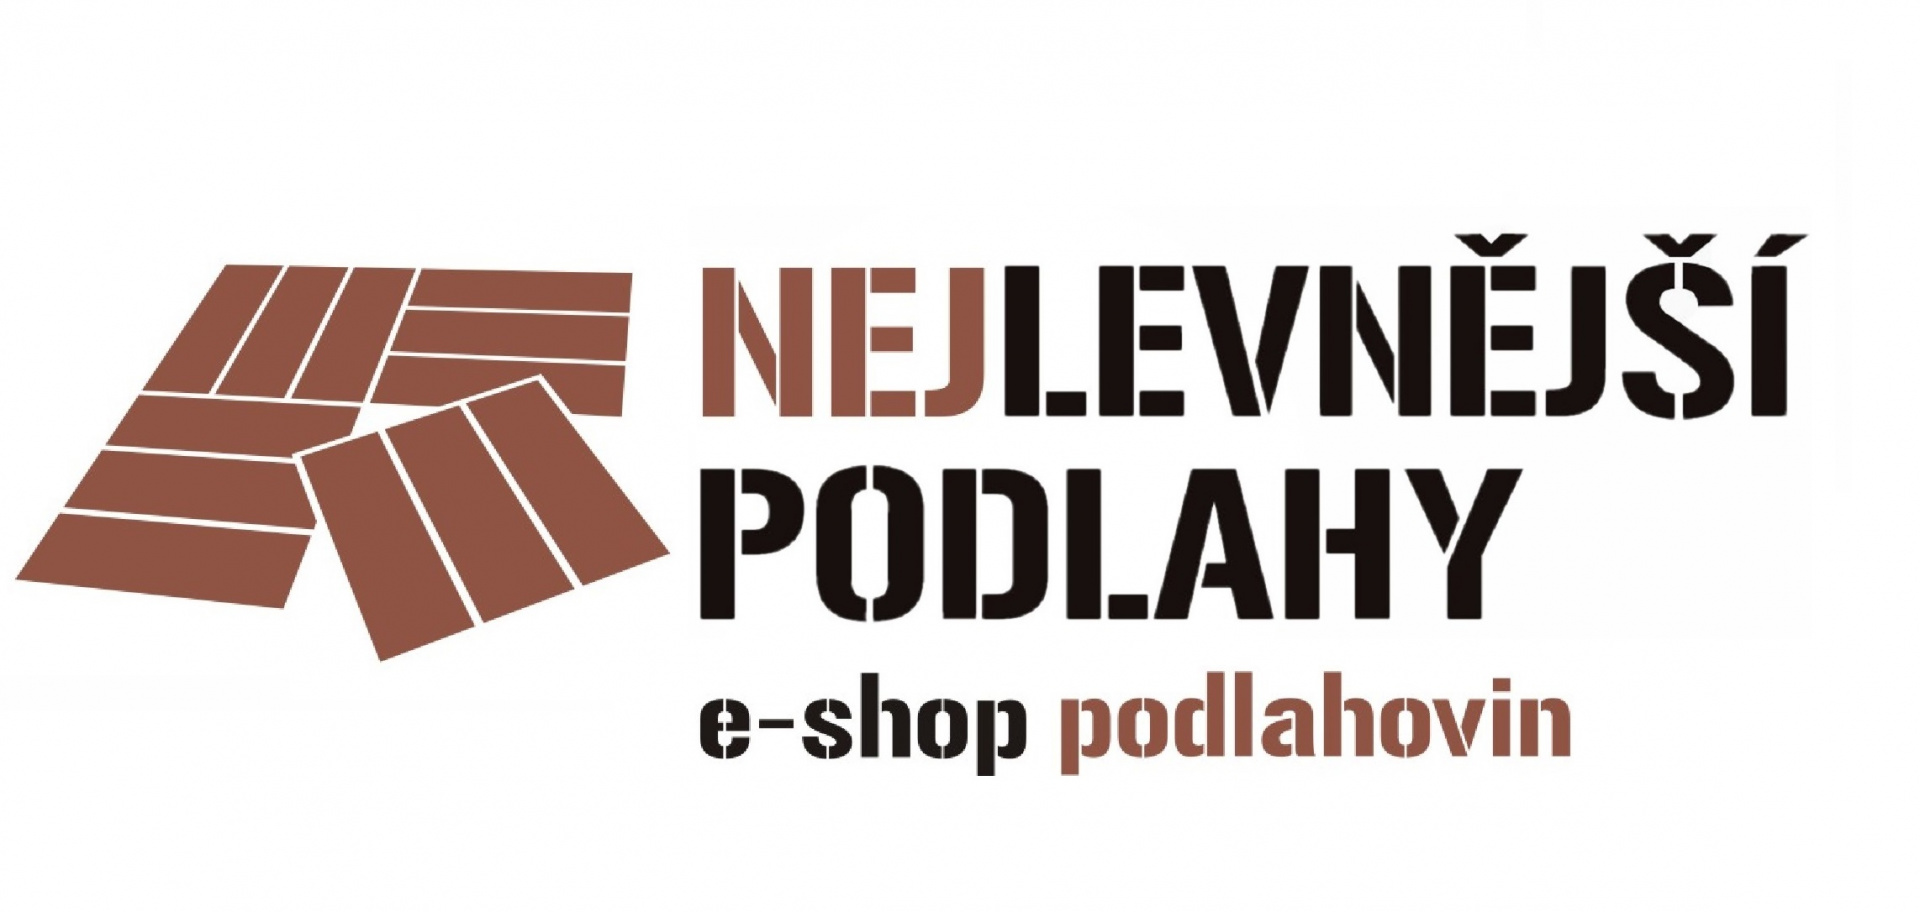 upravené logo povedené 8.8.2017 pokus 2.jpg - Nejlevnejsipodlahy.cz